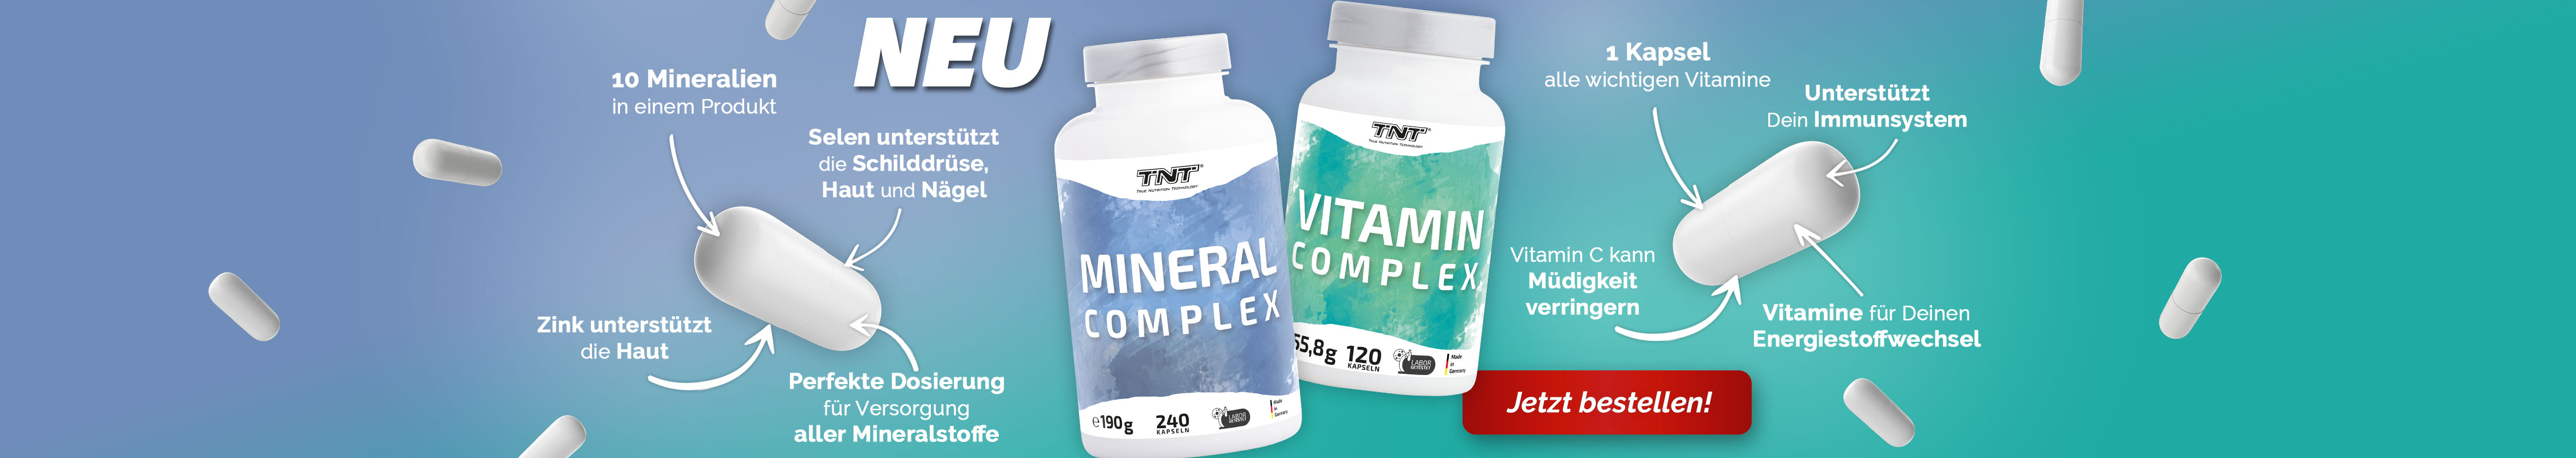 NEU - TNT Vitamin Complex & TNT Mineral Conplex